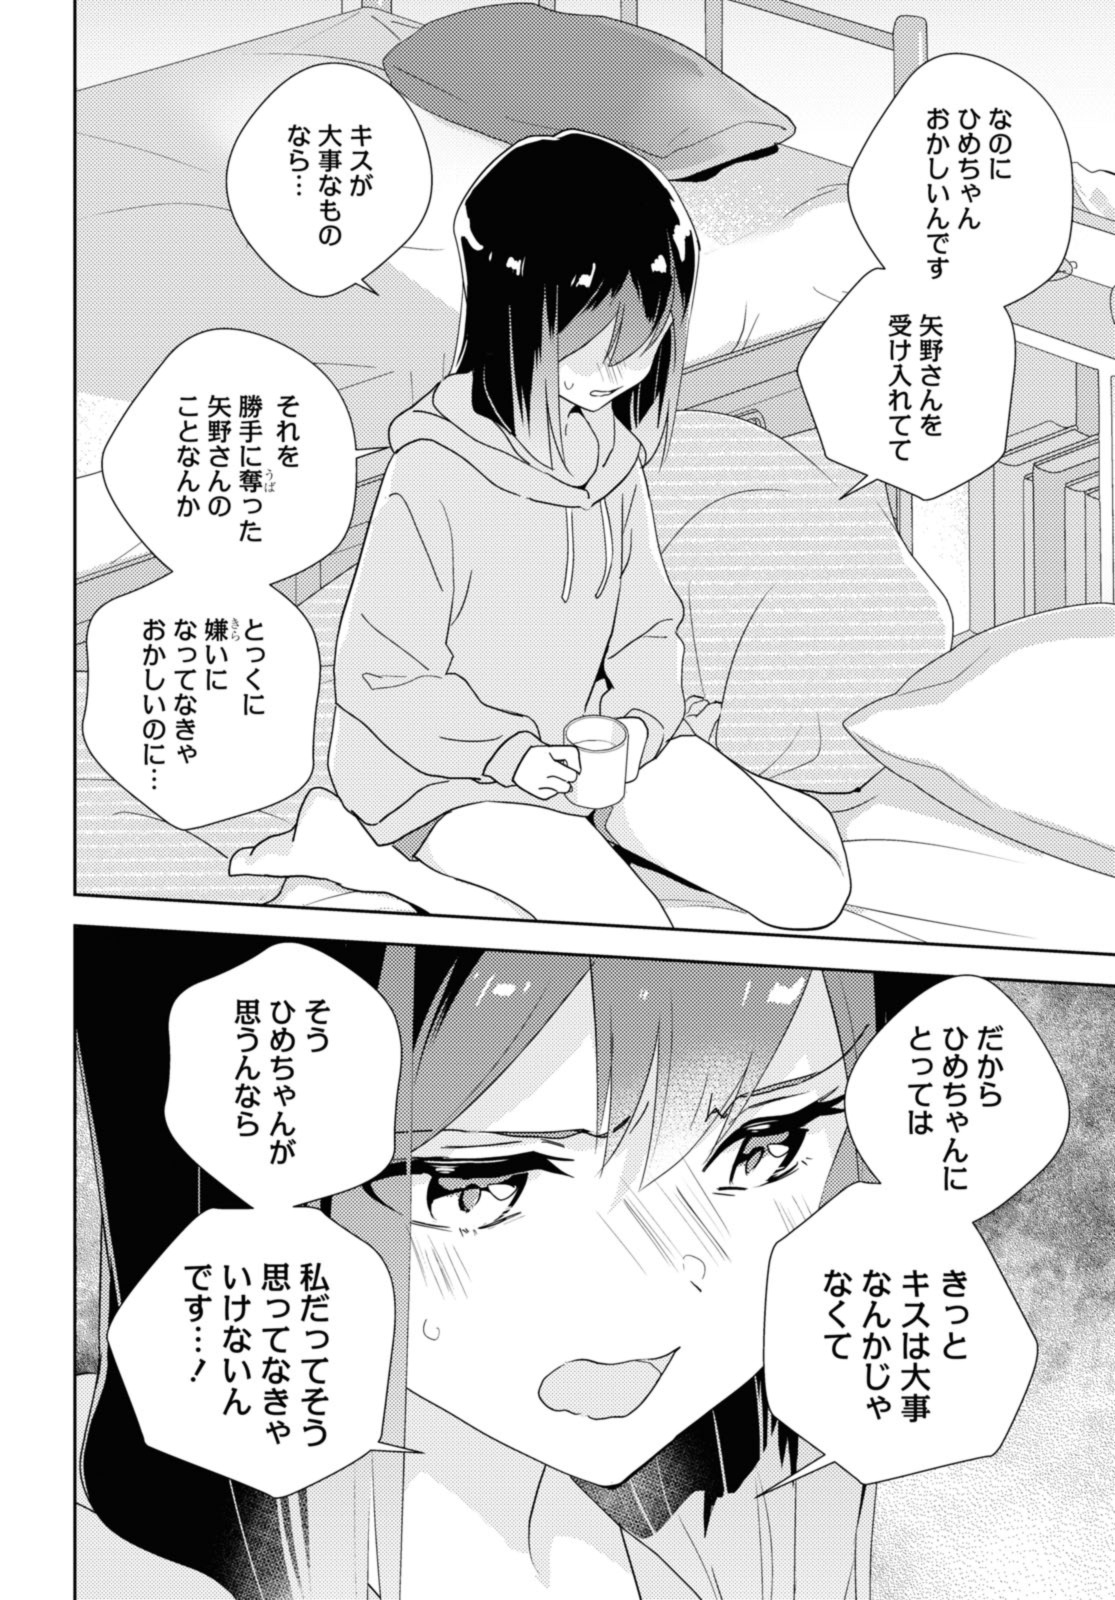 Watashi no yuri wa oshigotodesu! - Chapter 61 - Page 8